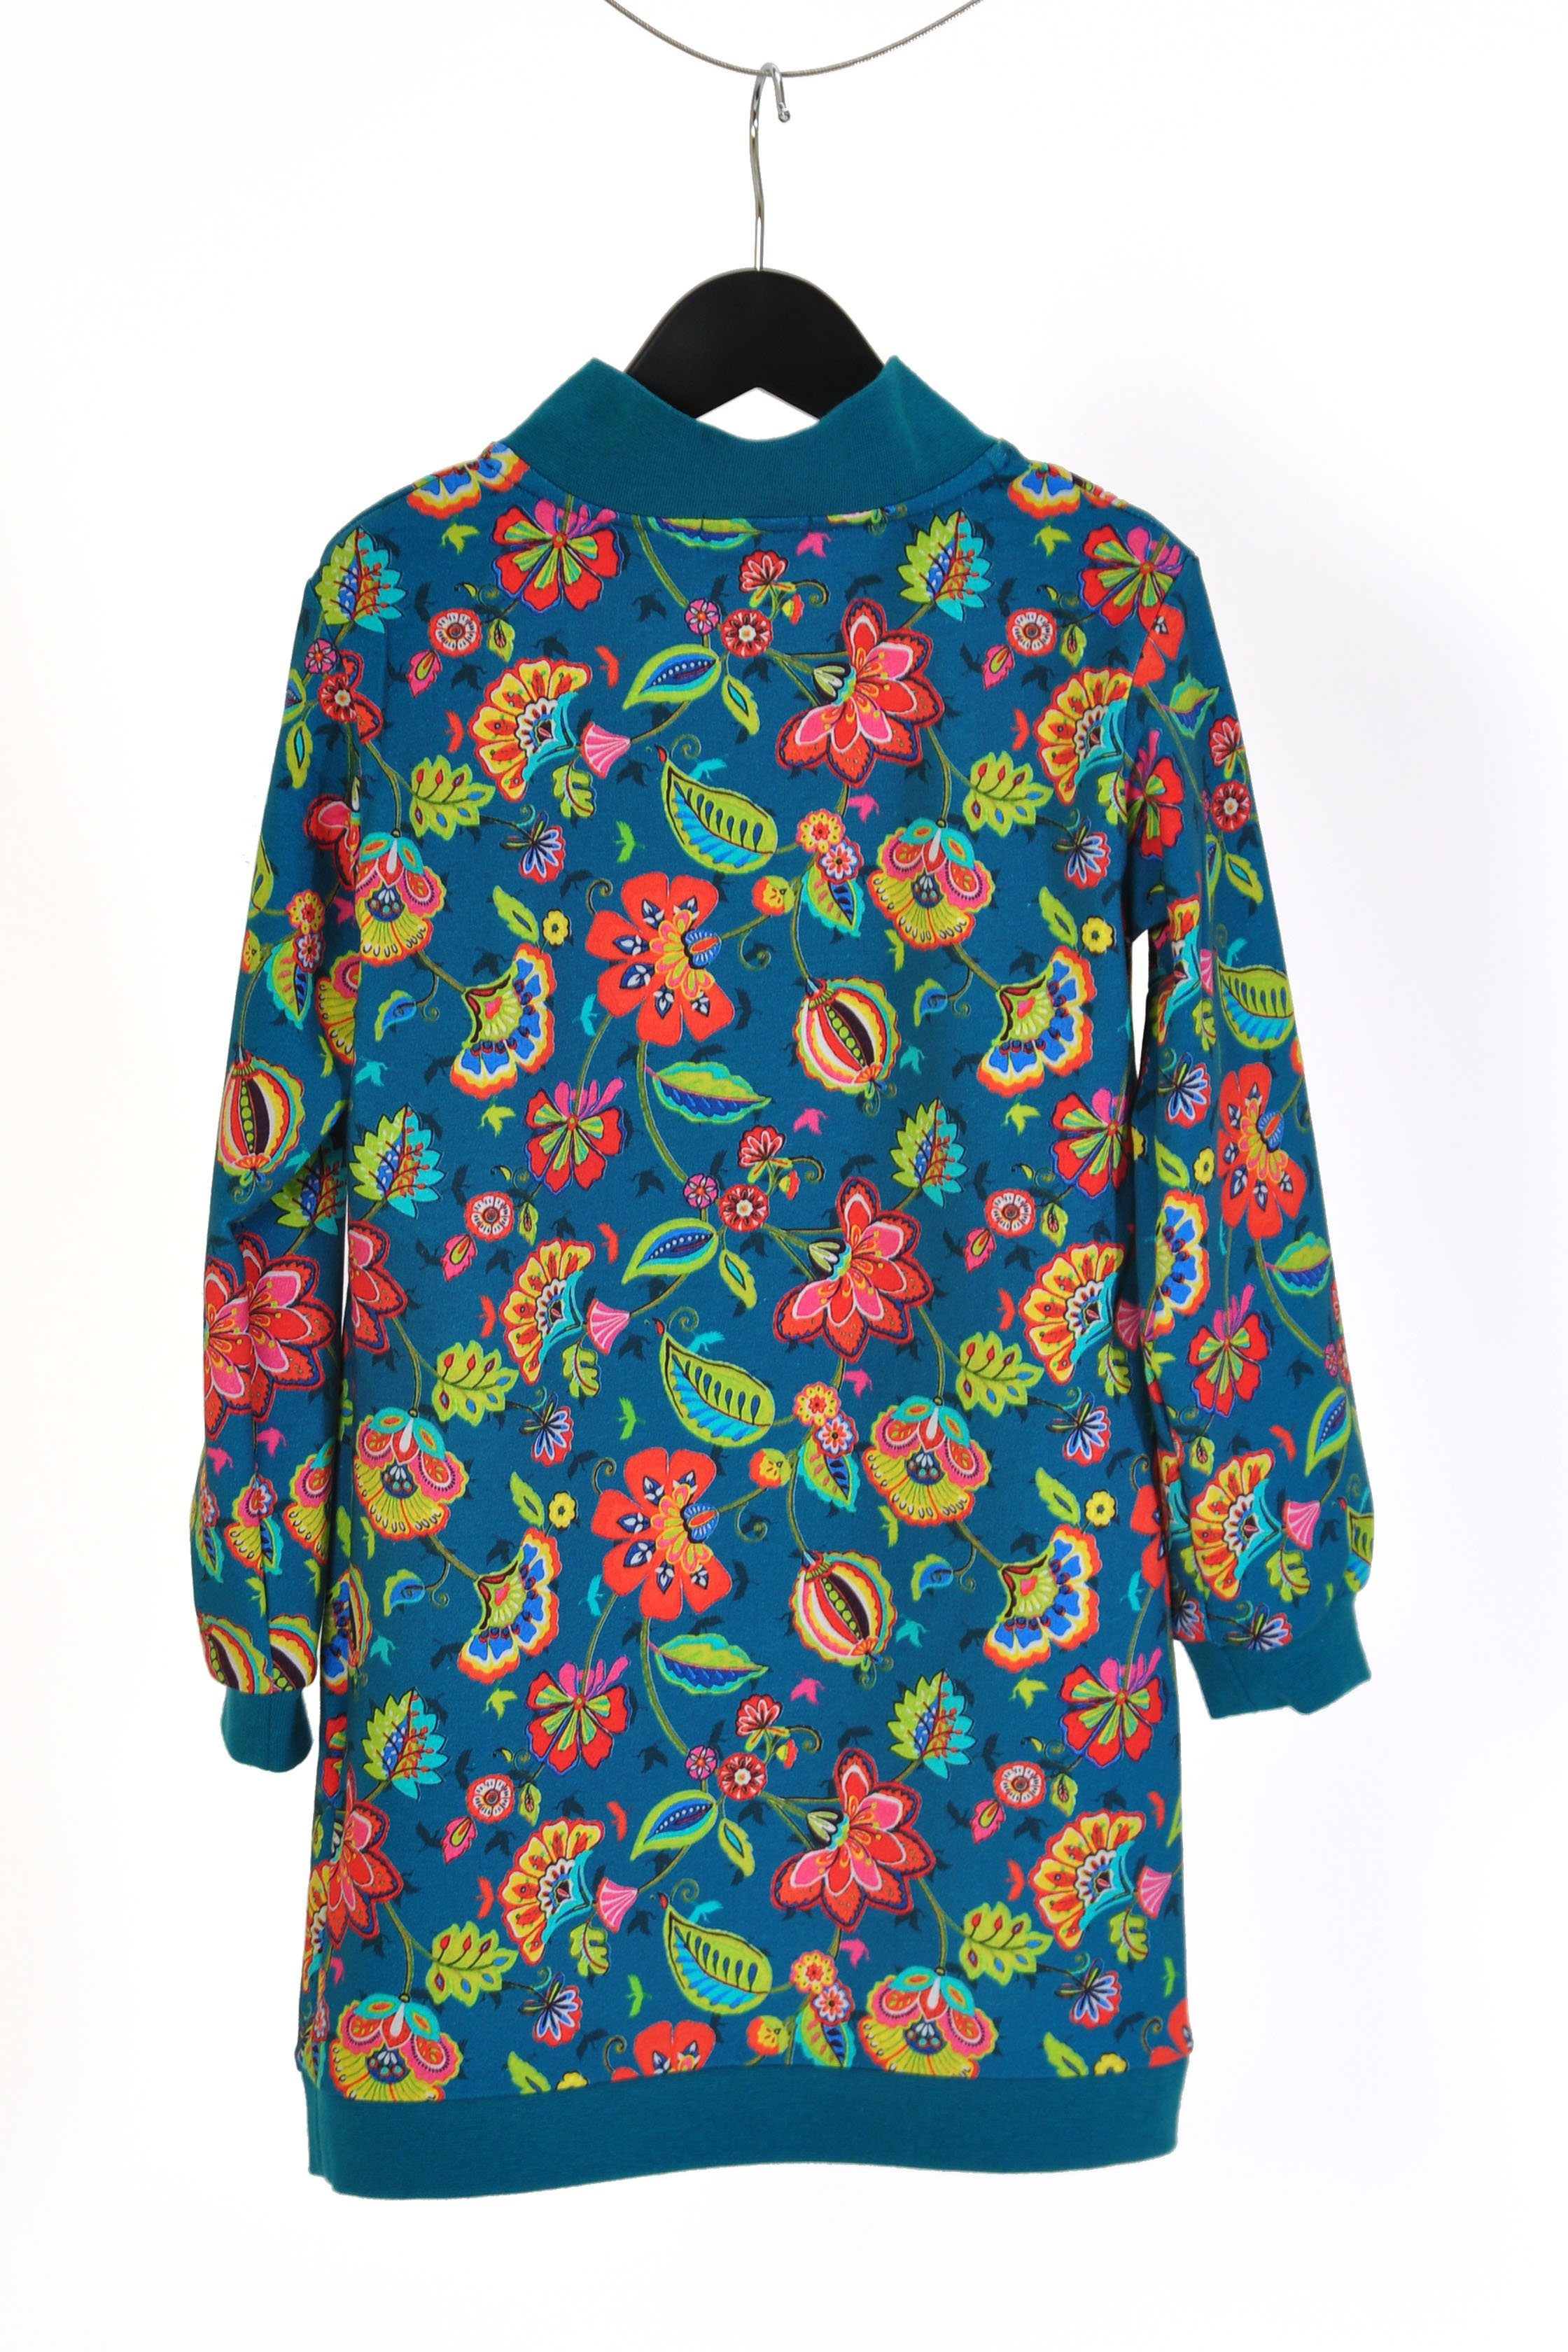 coolismo Sweatkleid Sweatshirt Kleid für europäische Blumen coole Mädchen Produktion petrol mit Motivdruck